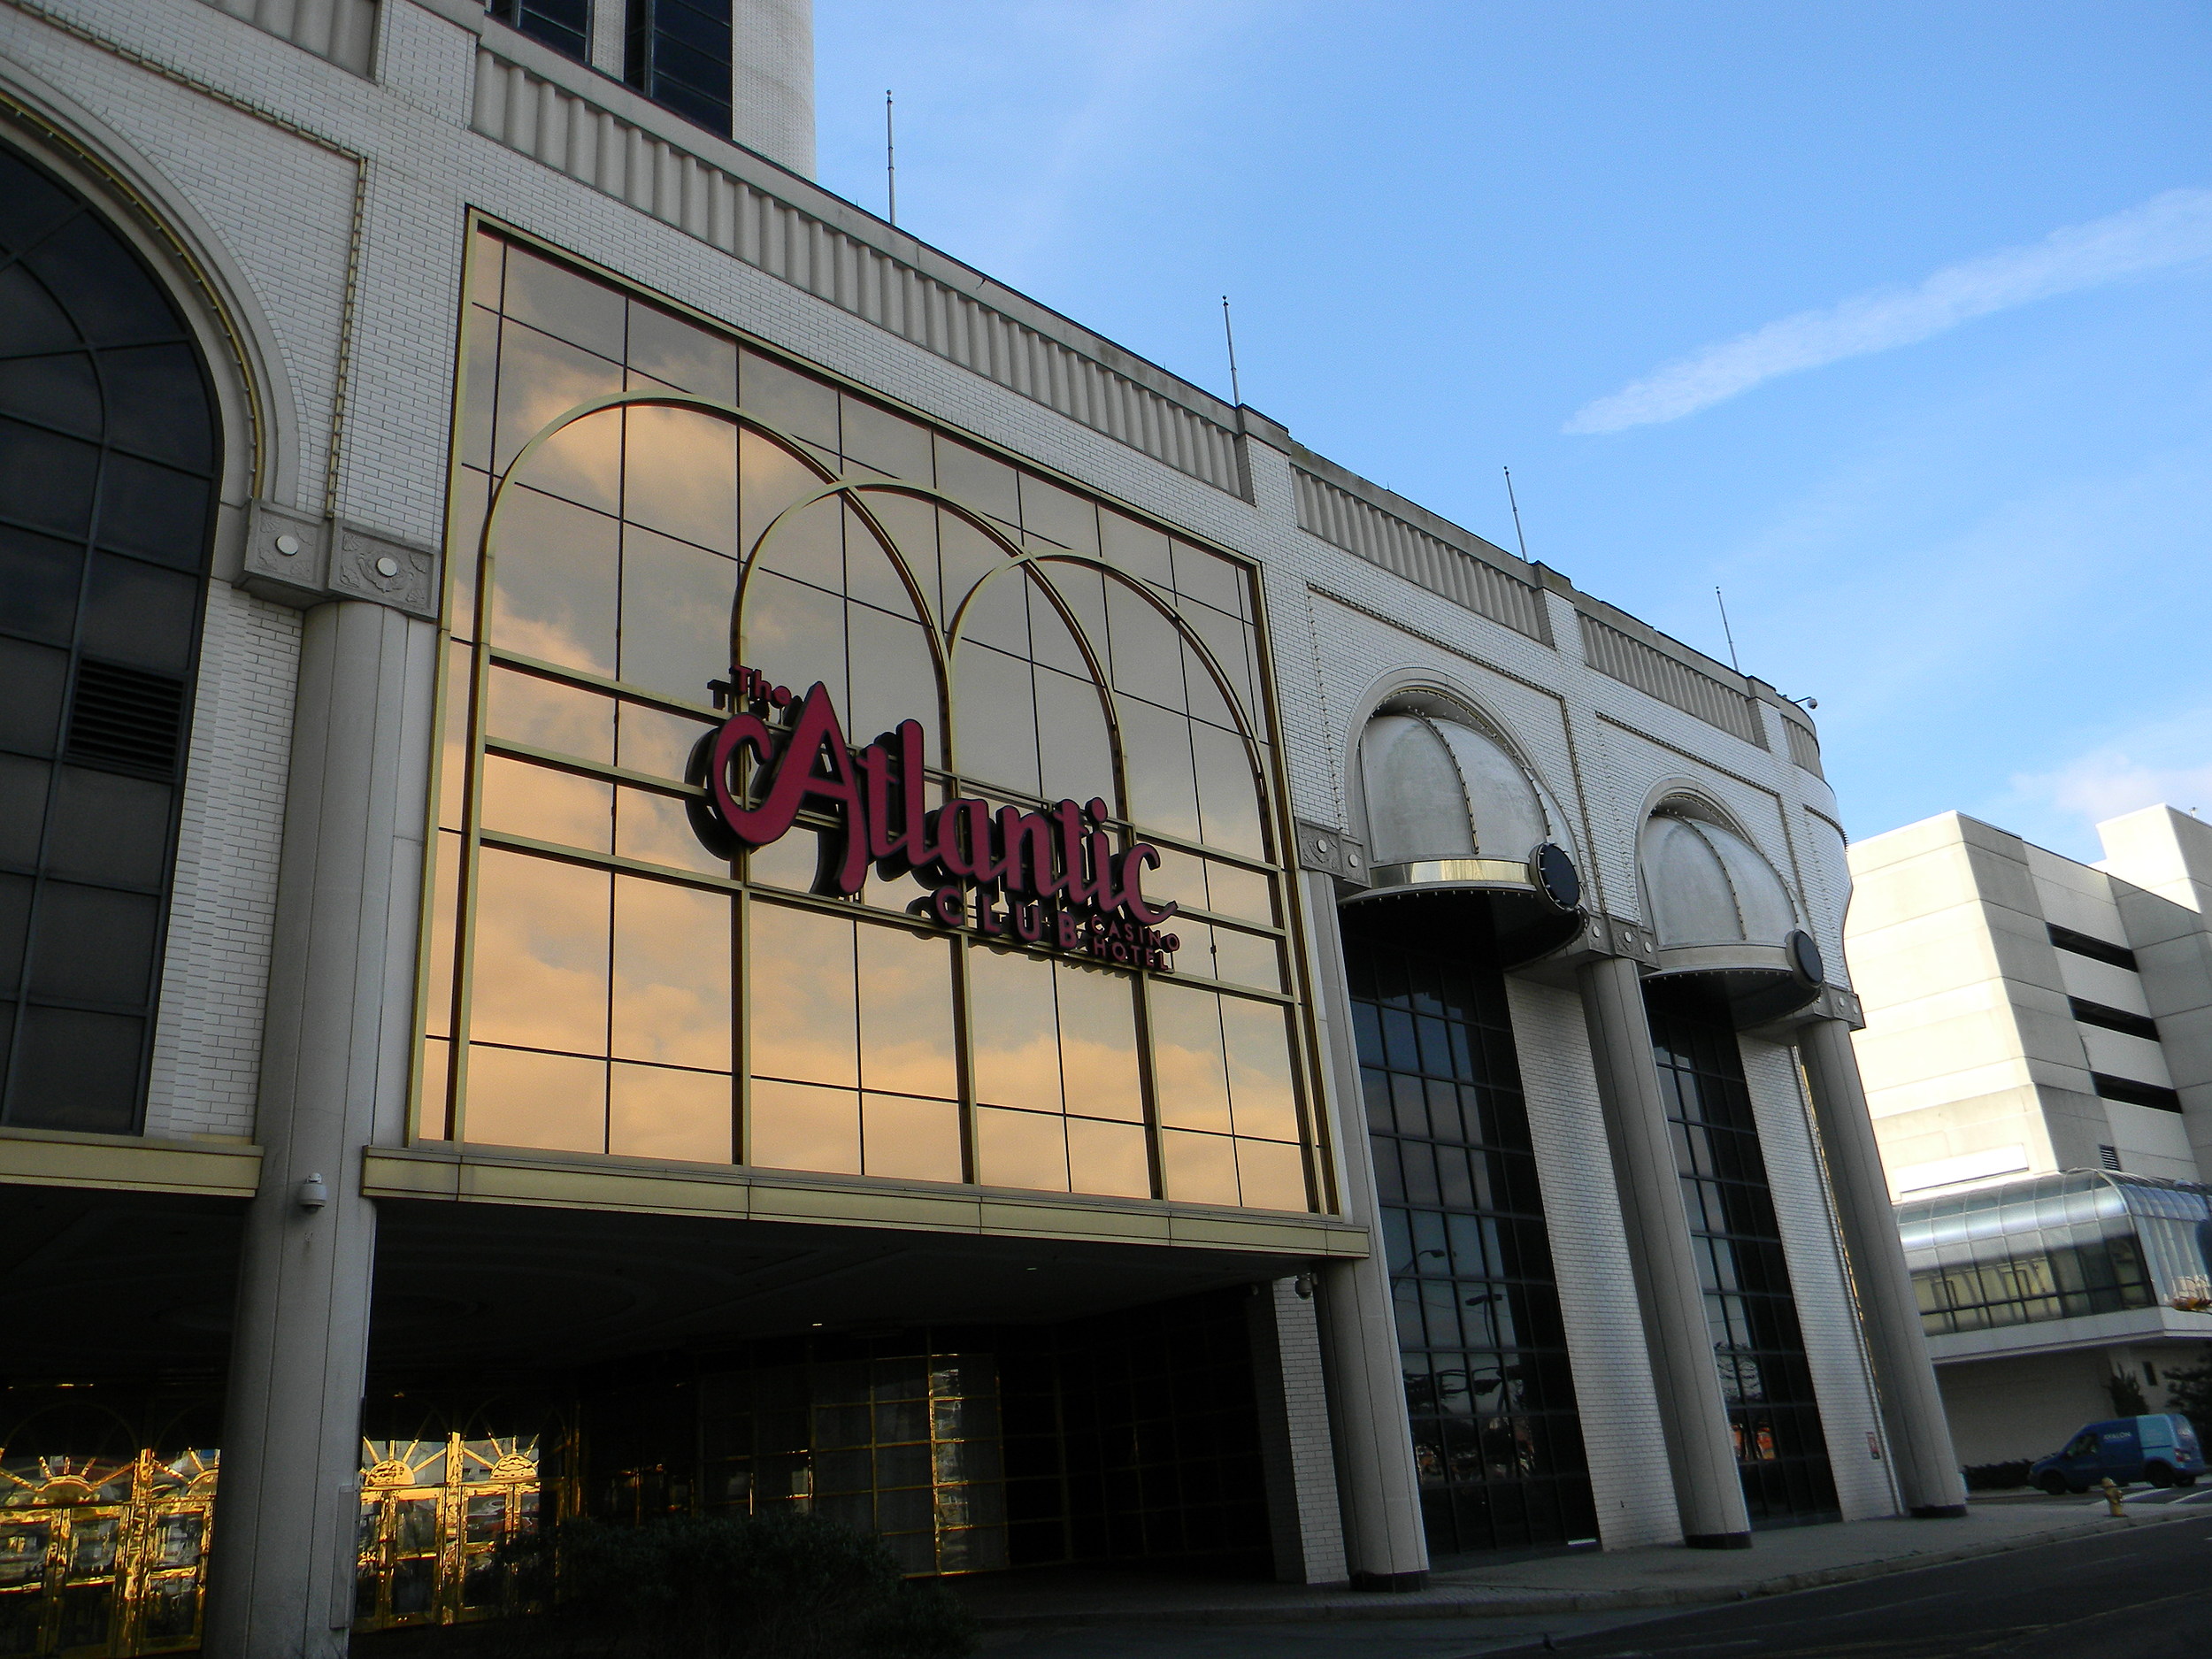 ocean club casino atlantic city restaurant